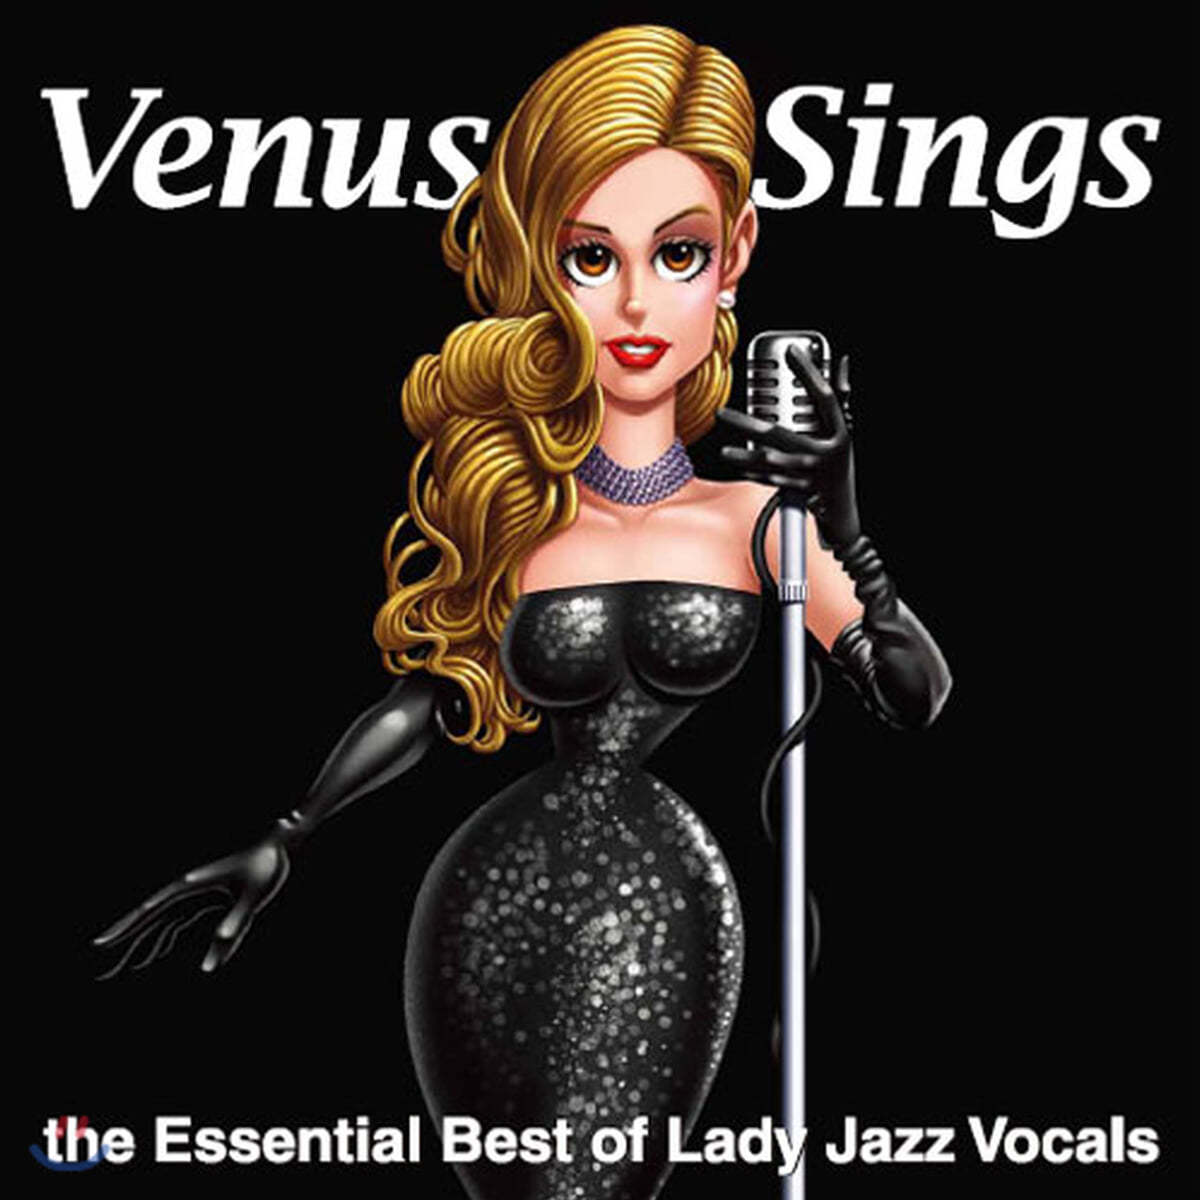 비너스 레이블 여성 재즈 보컬 베스트 모음집 (Venus Sings Essential Best Of Lady Jazz Vocals)